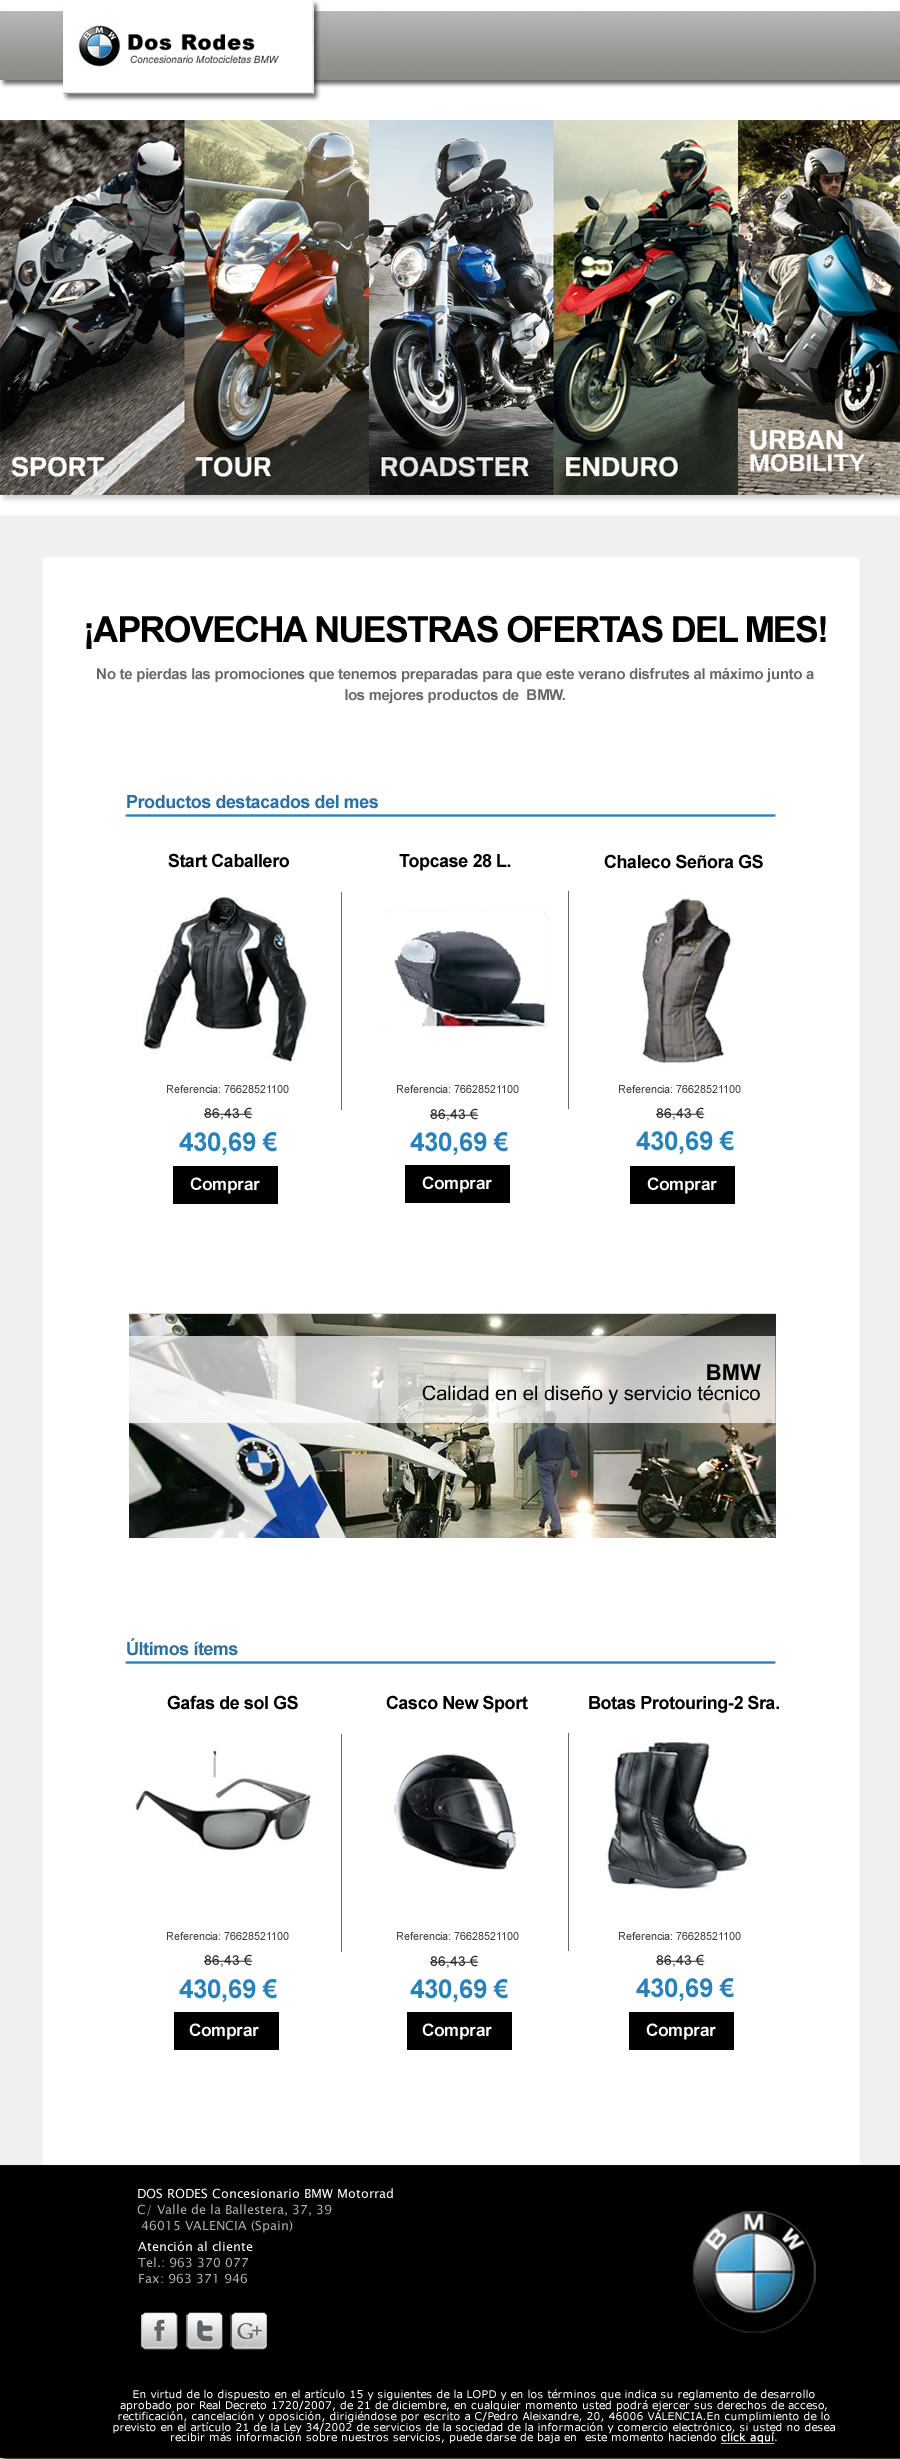 Diseño de newsletter para tienda online de motos BMW